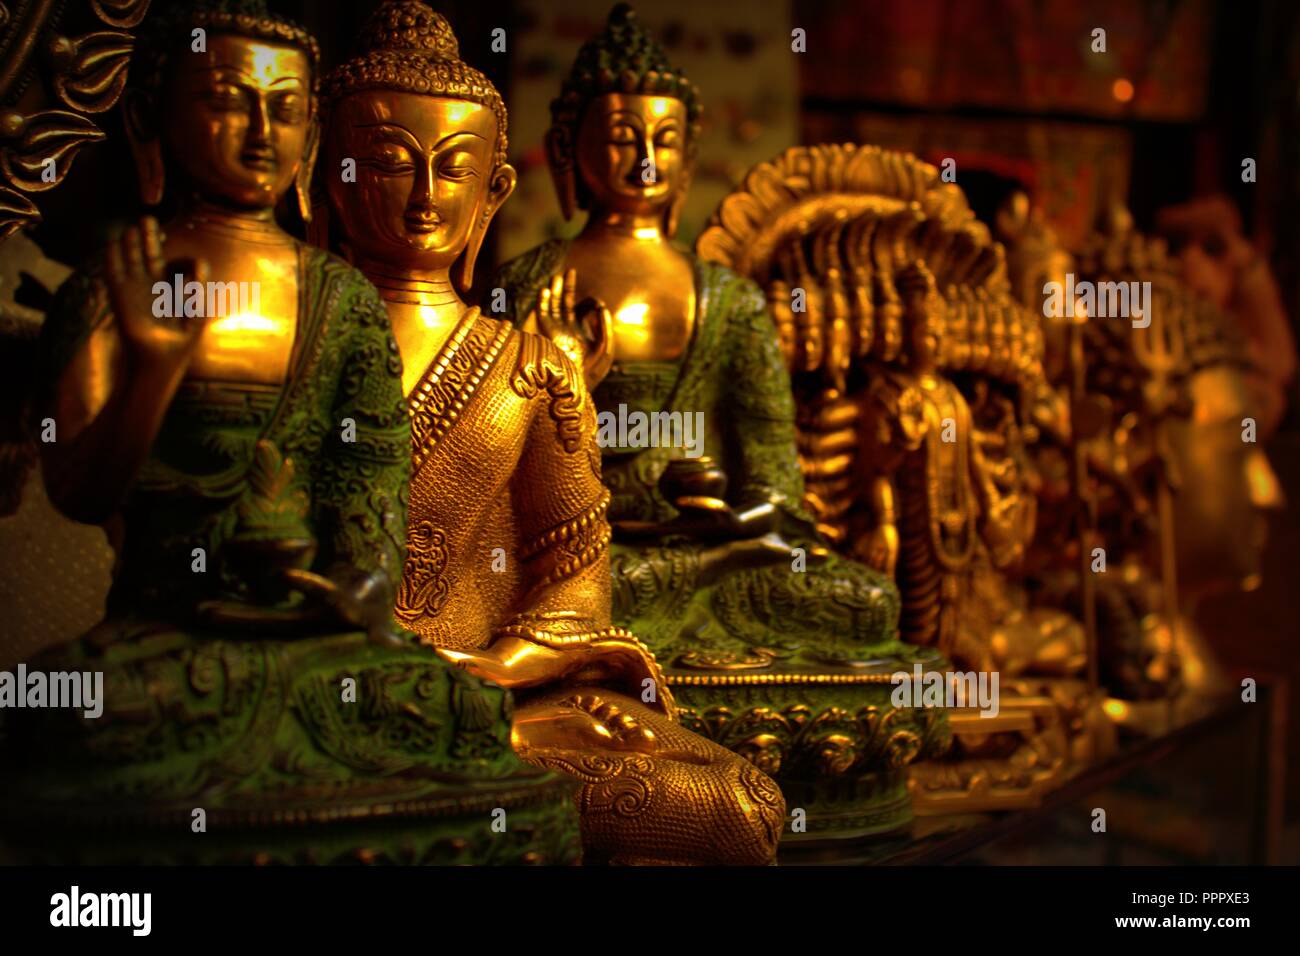 Bouddhas méditant , Gautam Bouddha en bronze, une boutique de vente avant des personnalités religieuses et des figurines de bronze - Rishikesh - Inde Banque D'Images